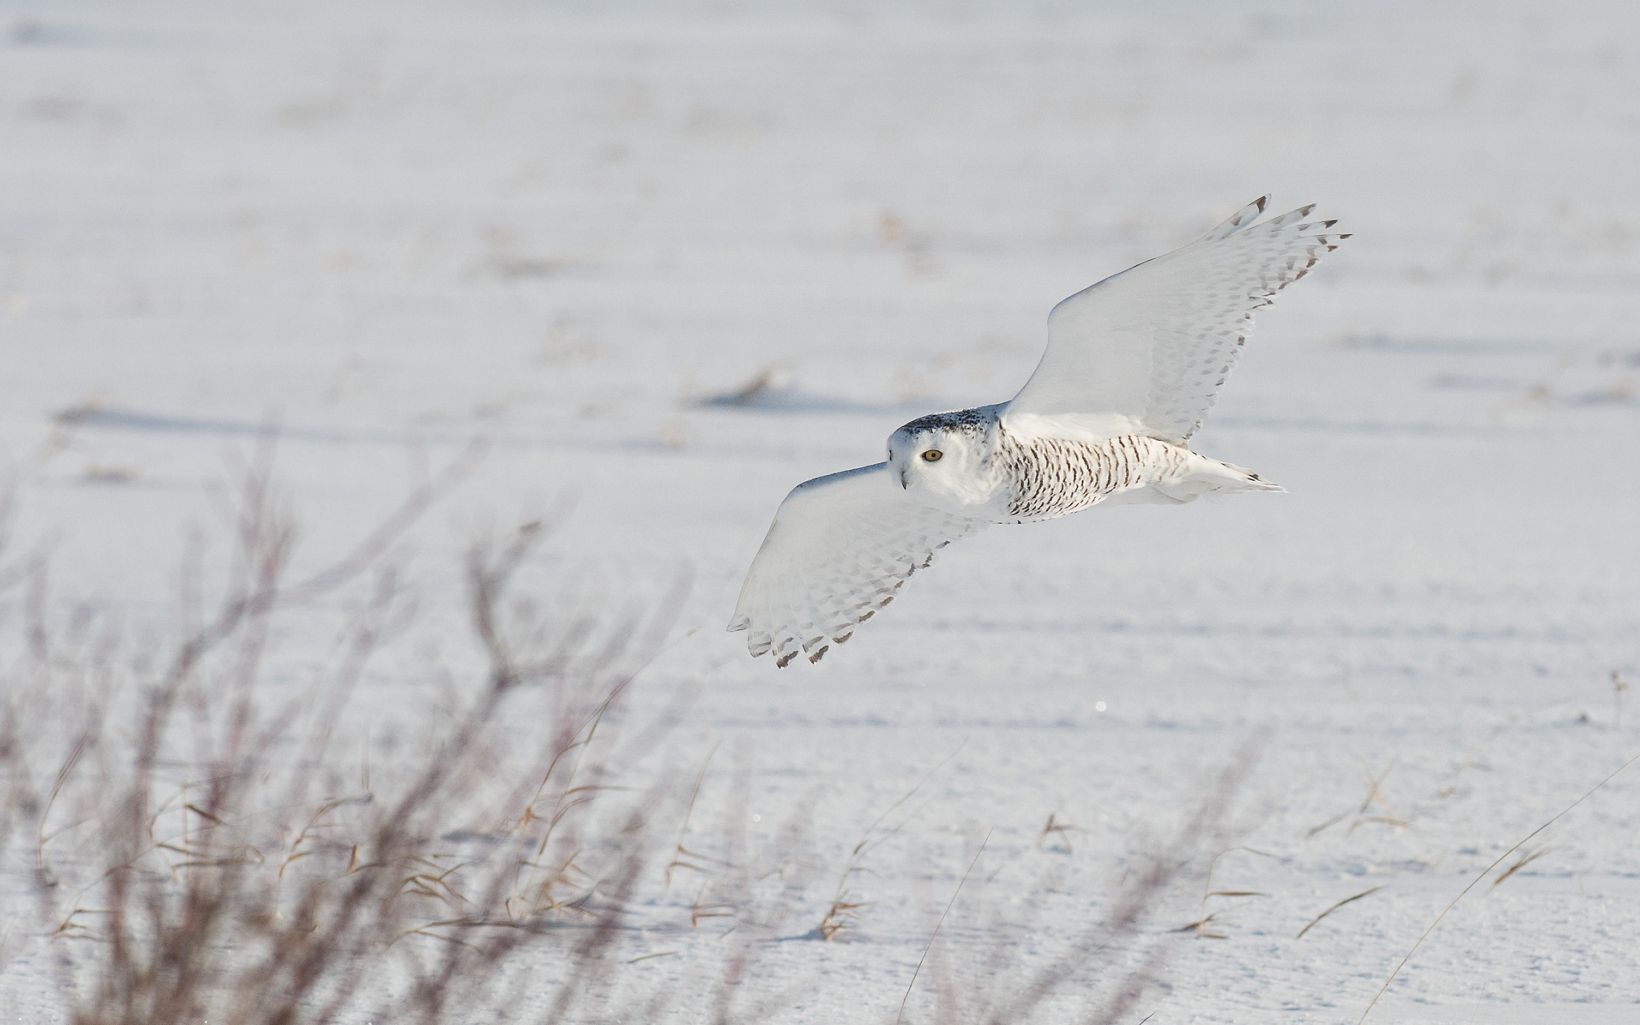 A snowy owl in flight.